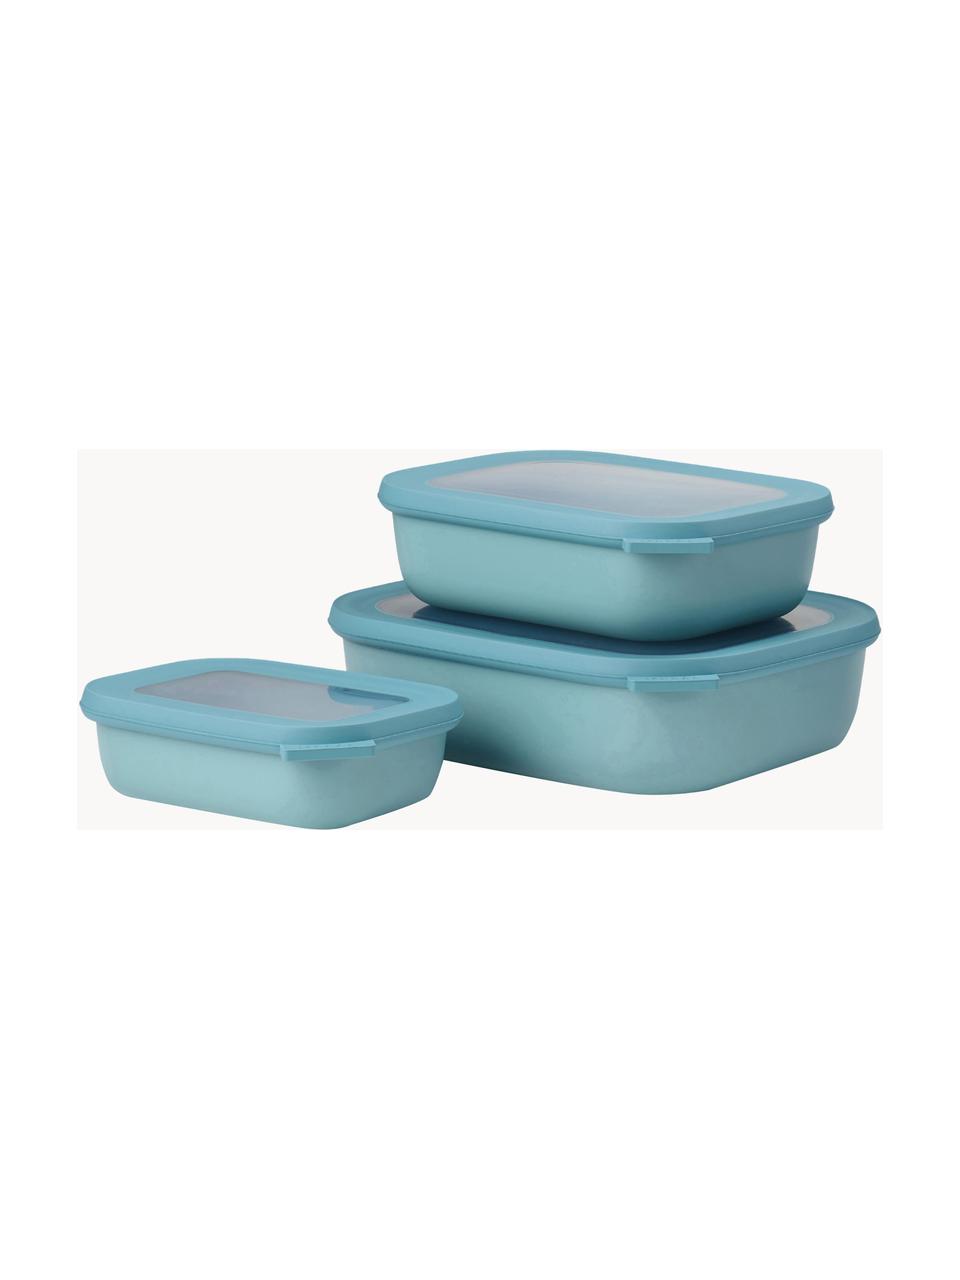 Aufbewahrungsboxen Cirqula, 3er-Set, Polypropylen (PP), Thermoplastische Elastomere (TPE), BPA-frei, Türkis, 500 ml / 1 L / 2 L